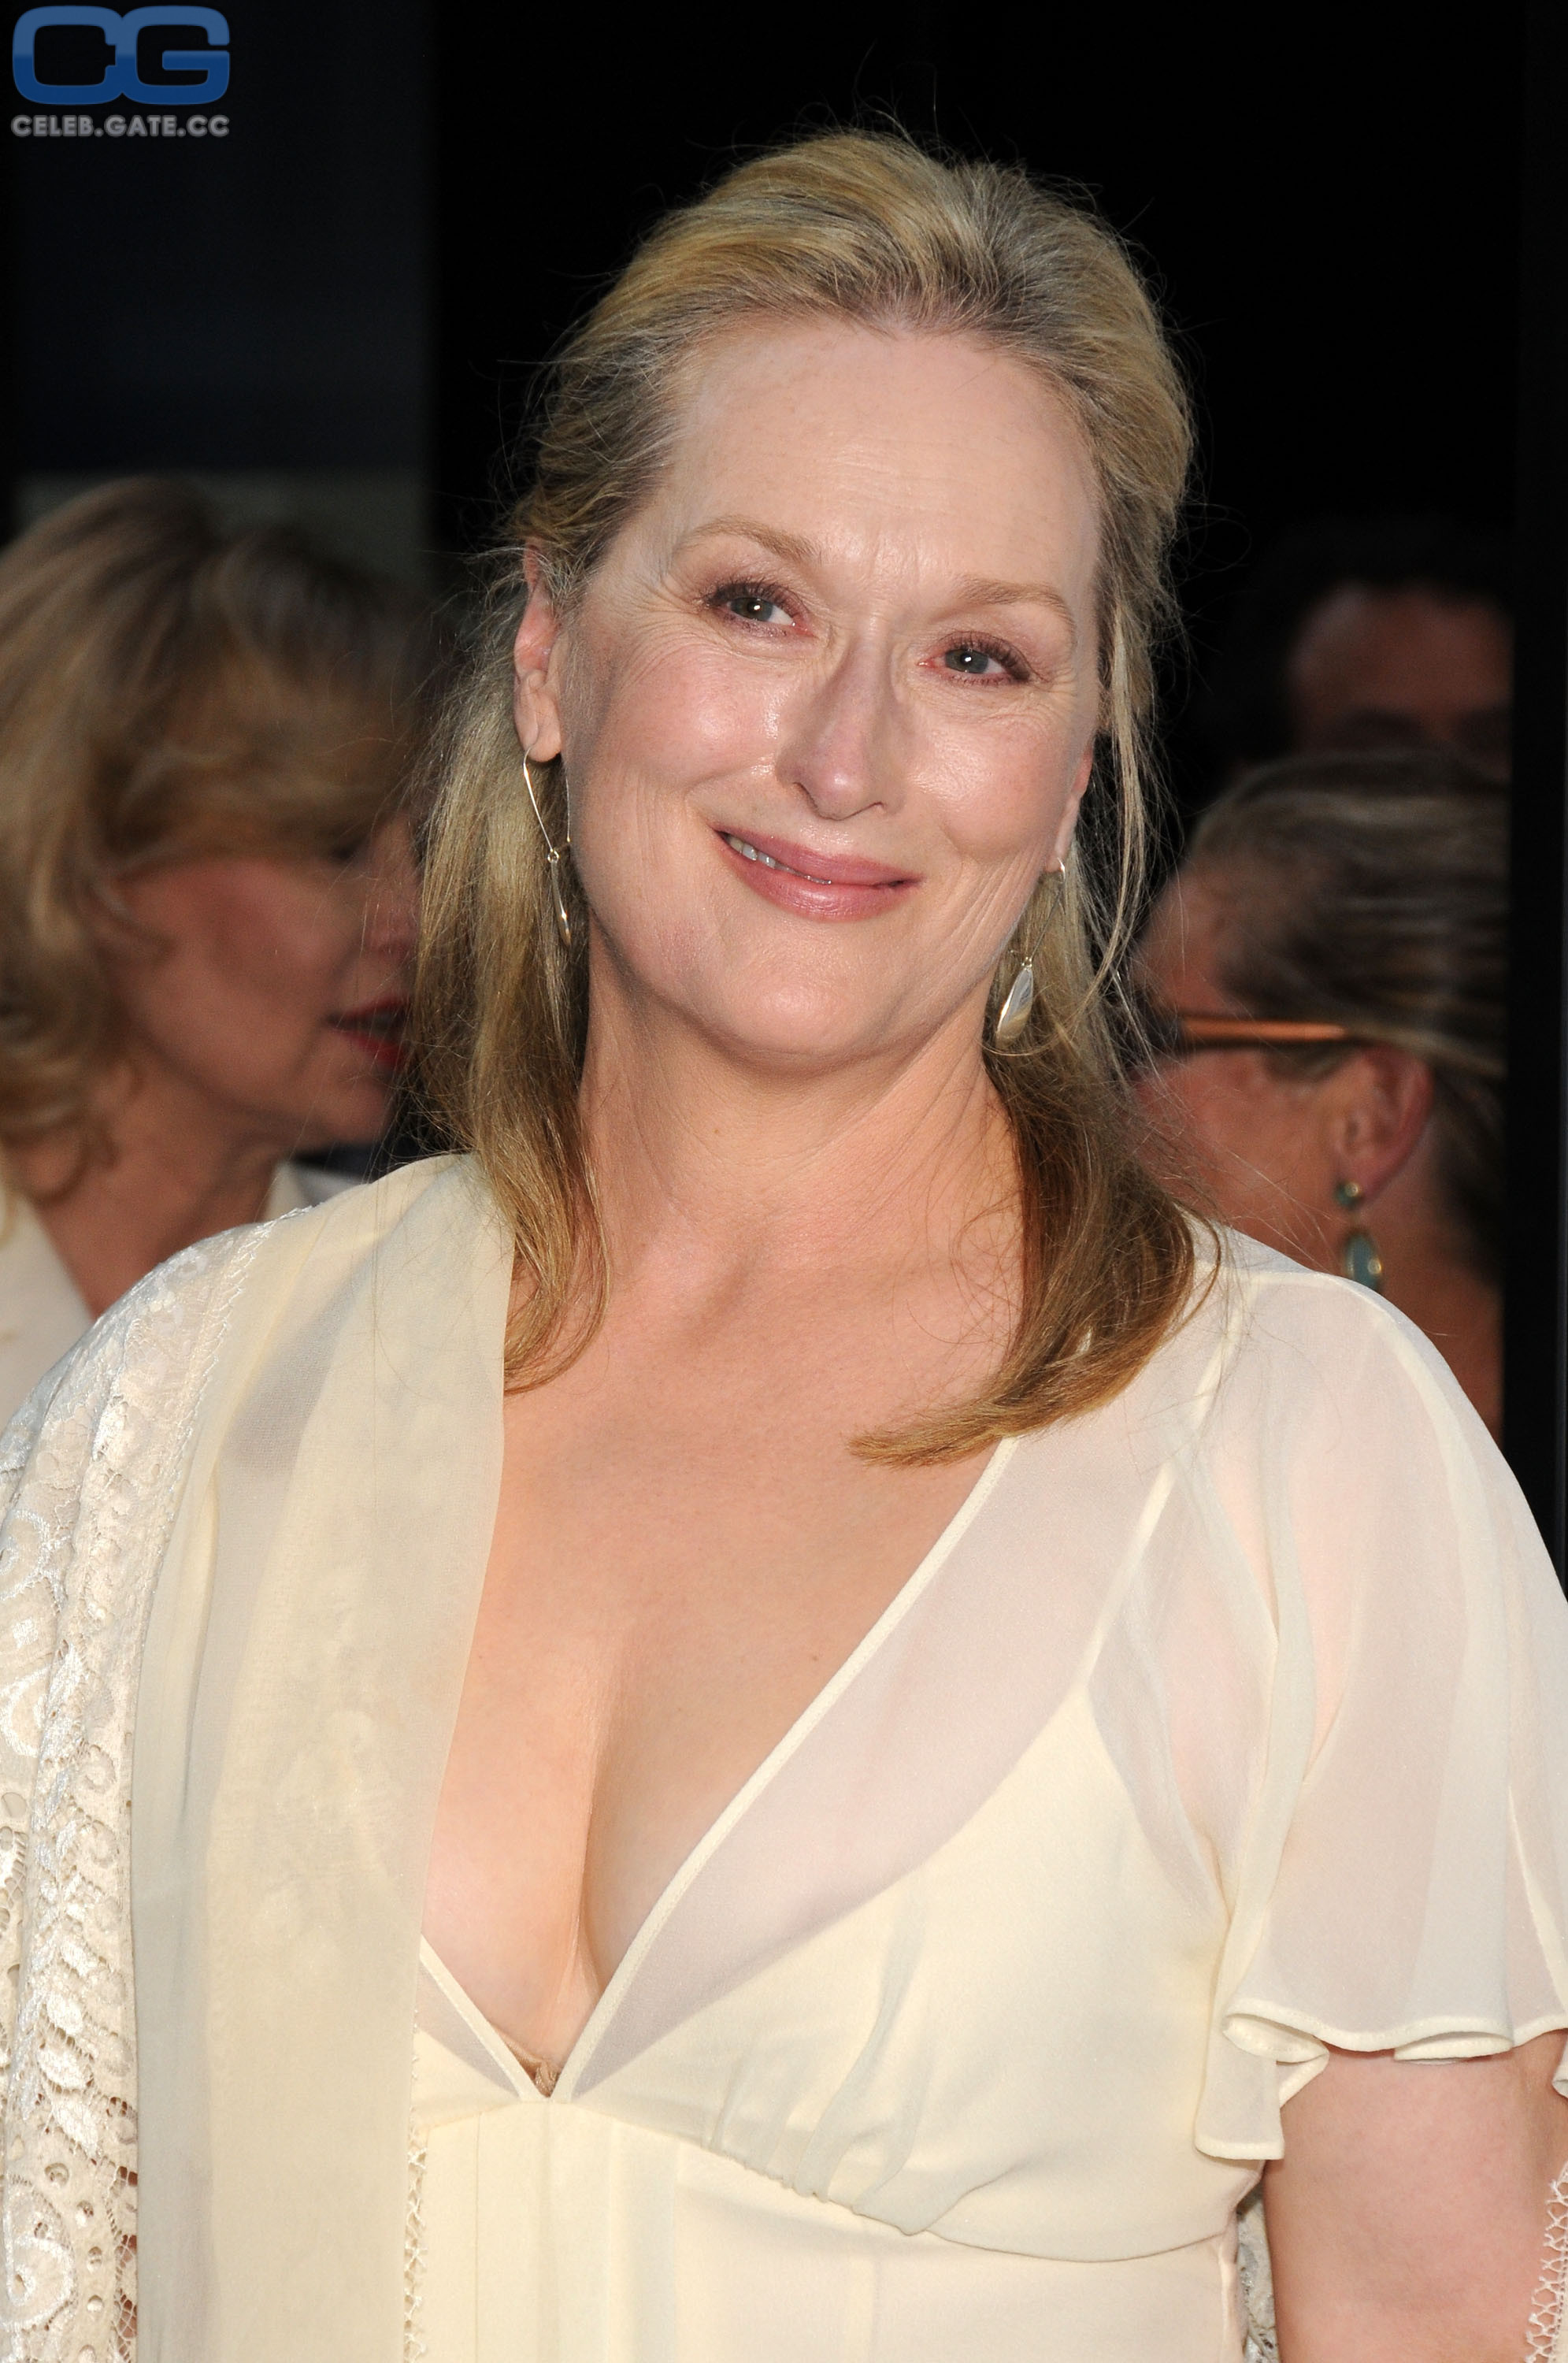 Meryl streep photos of nude Meryl Streep